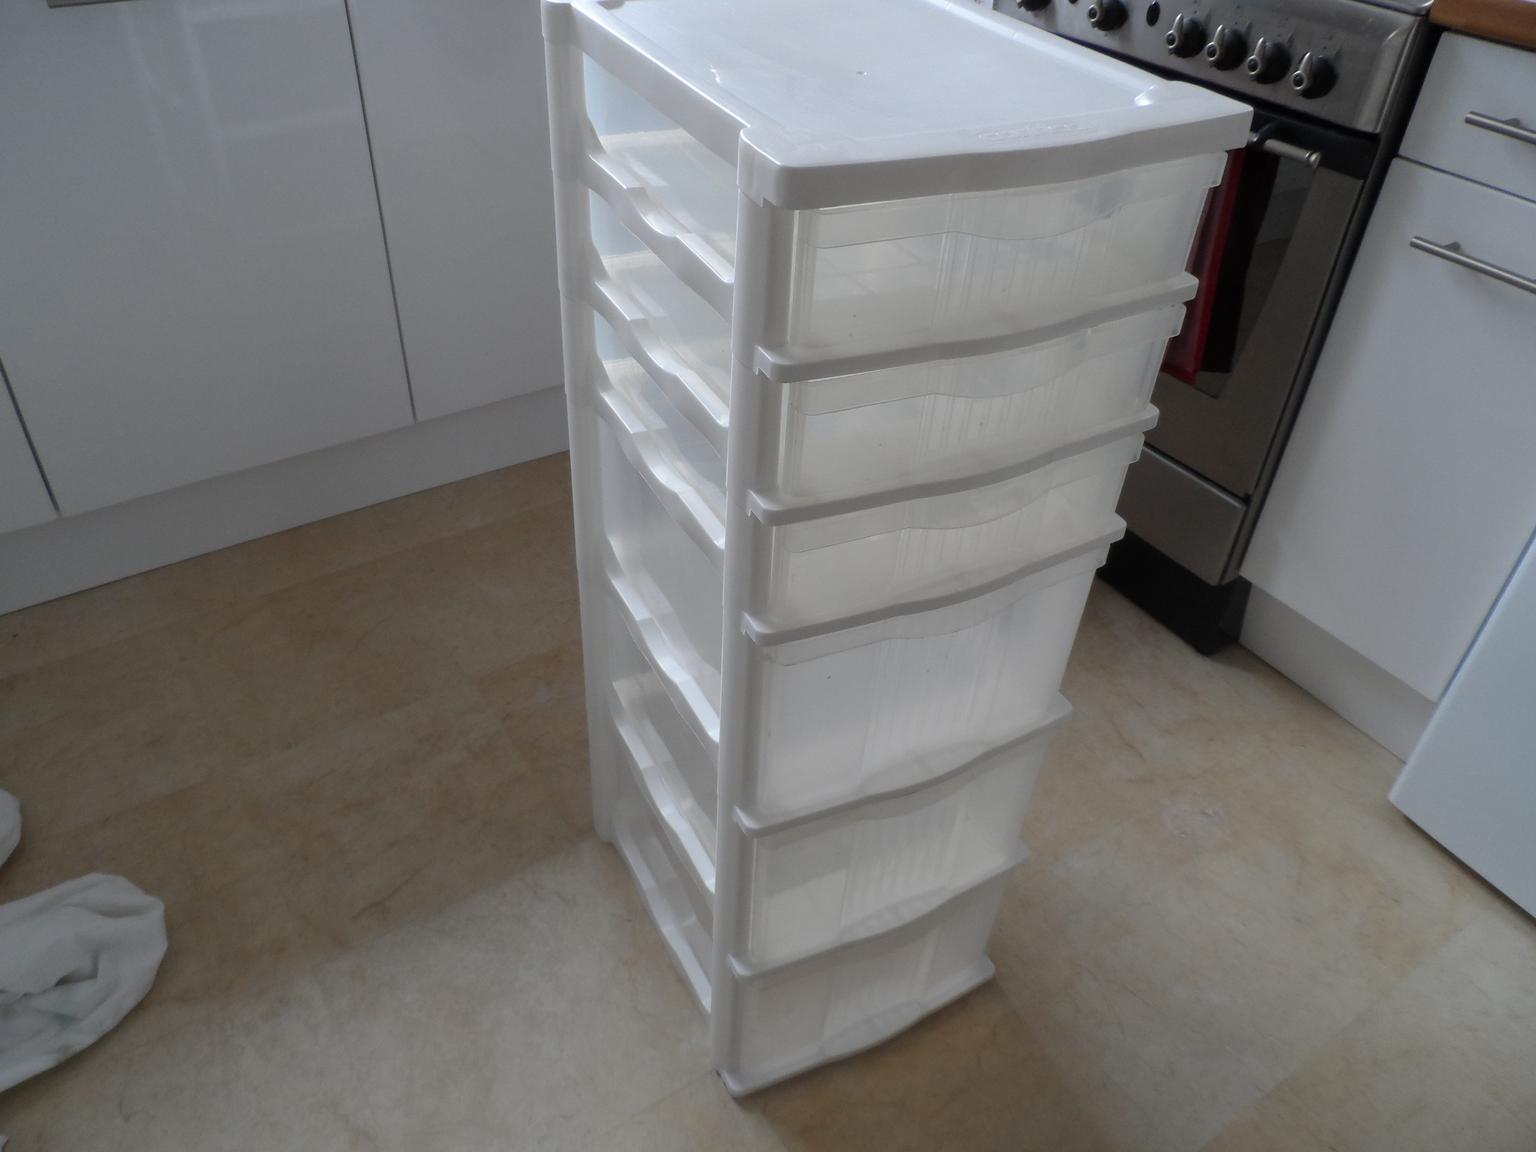 Contico 6 Drawer Plastic Storage White In Ss9 Sea Fur 15 00